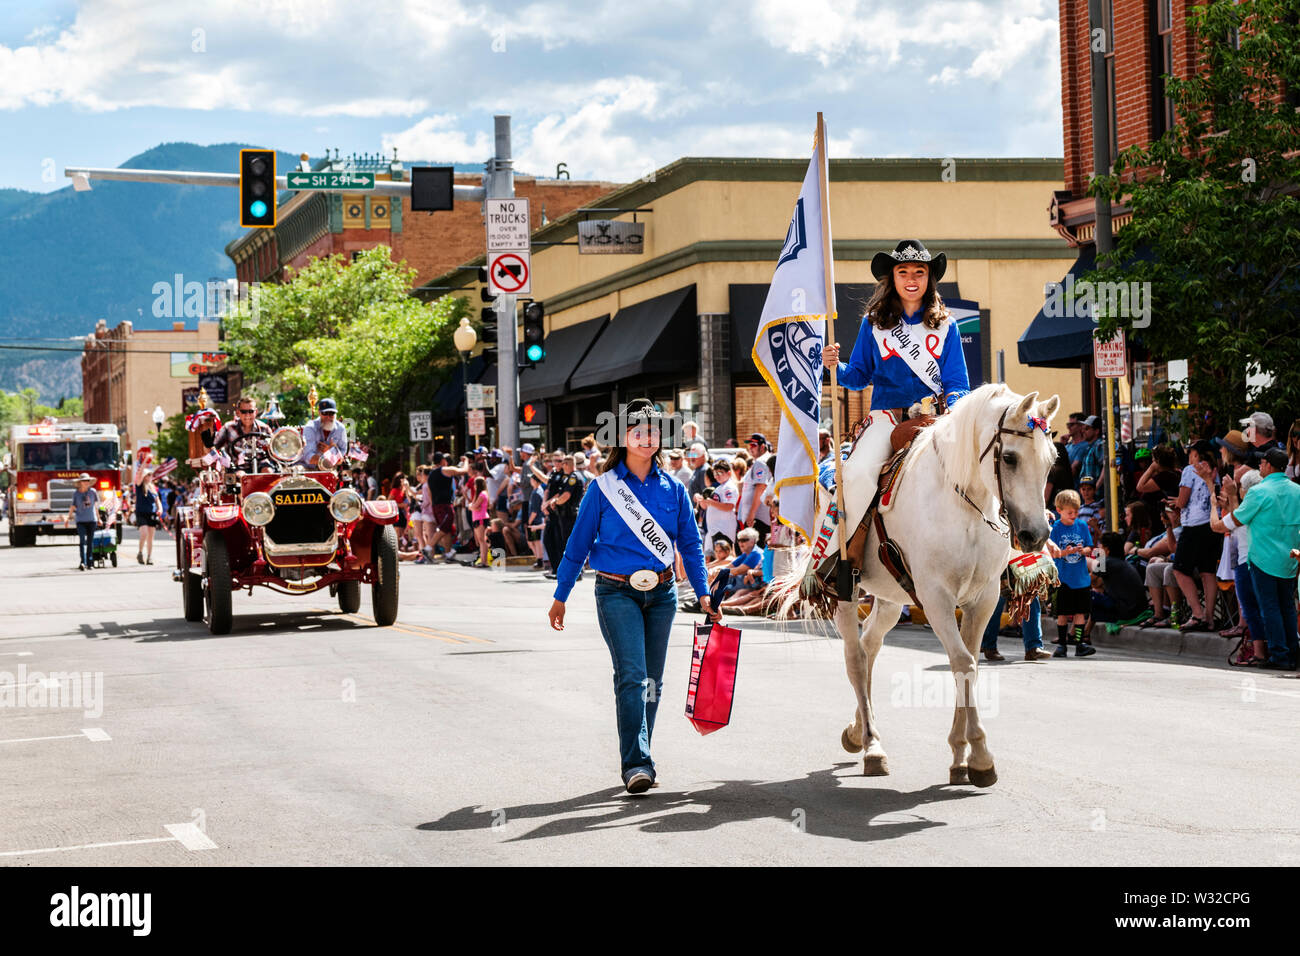 La Reine du rodéo équitation son cheval ; Quatrième de juillet parade dans la petite ville de montagne de Salida, Colorado, USA Banque D'Images